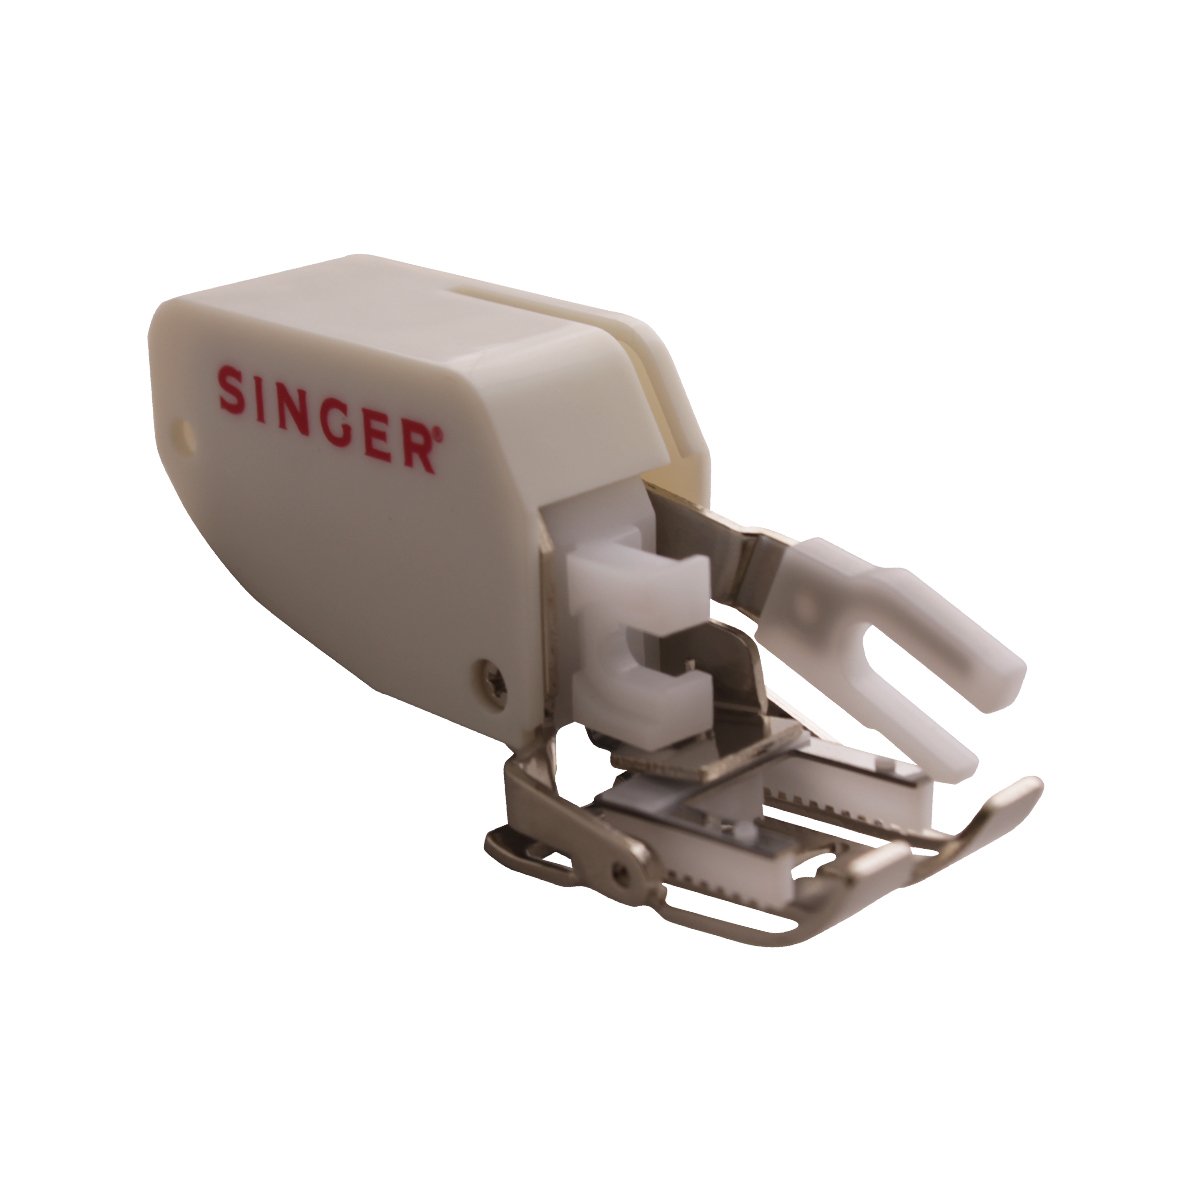 Prensatelas Singer de avance simultáneo para coser colchas y telas gruesas para máquinas de coser de caña baja, 2500271.06